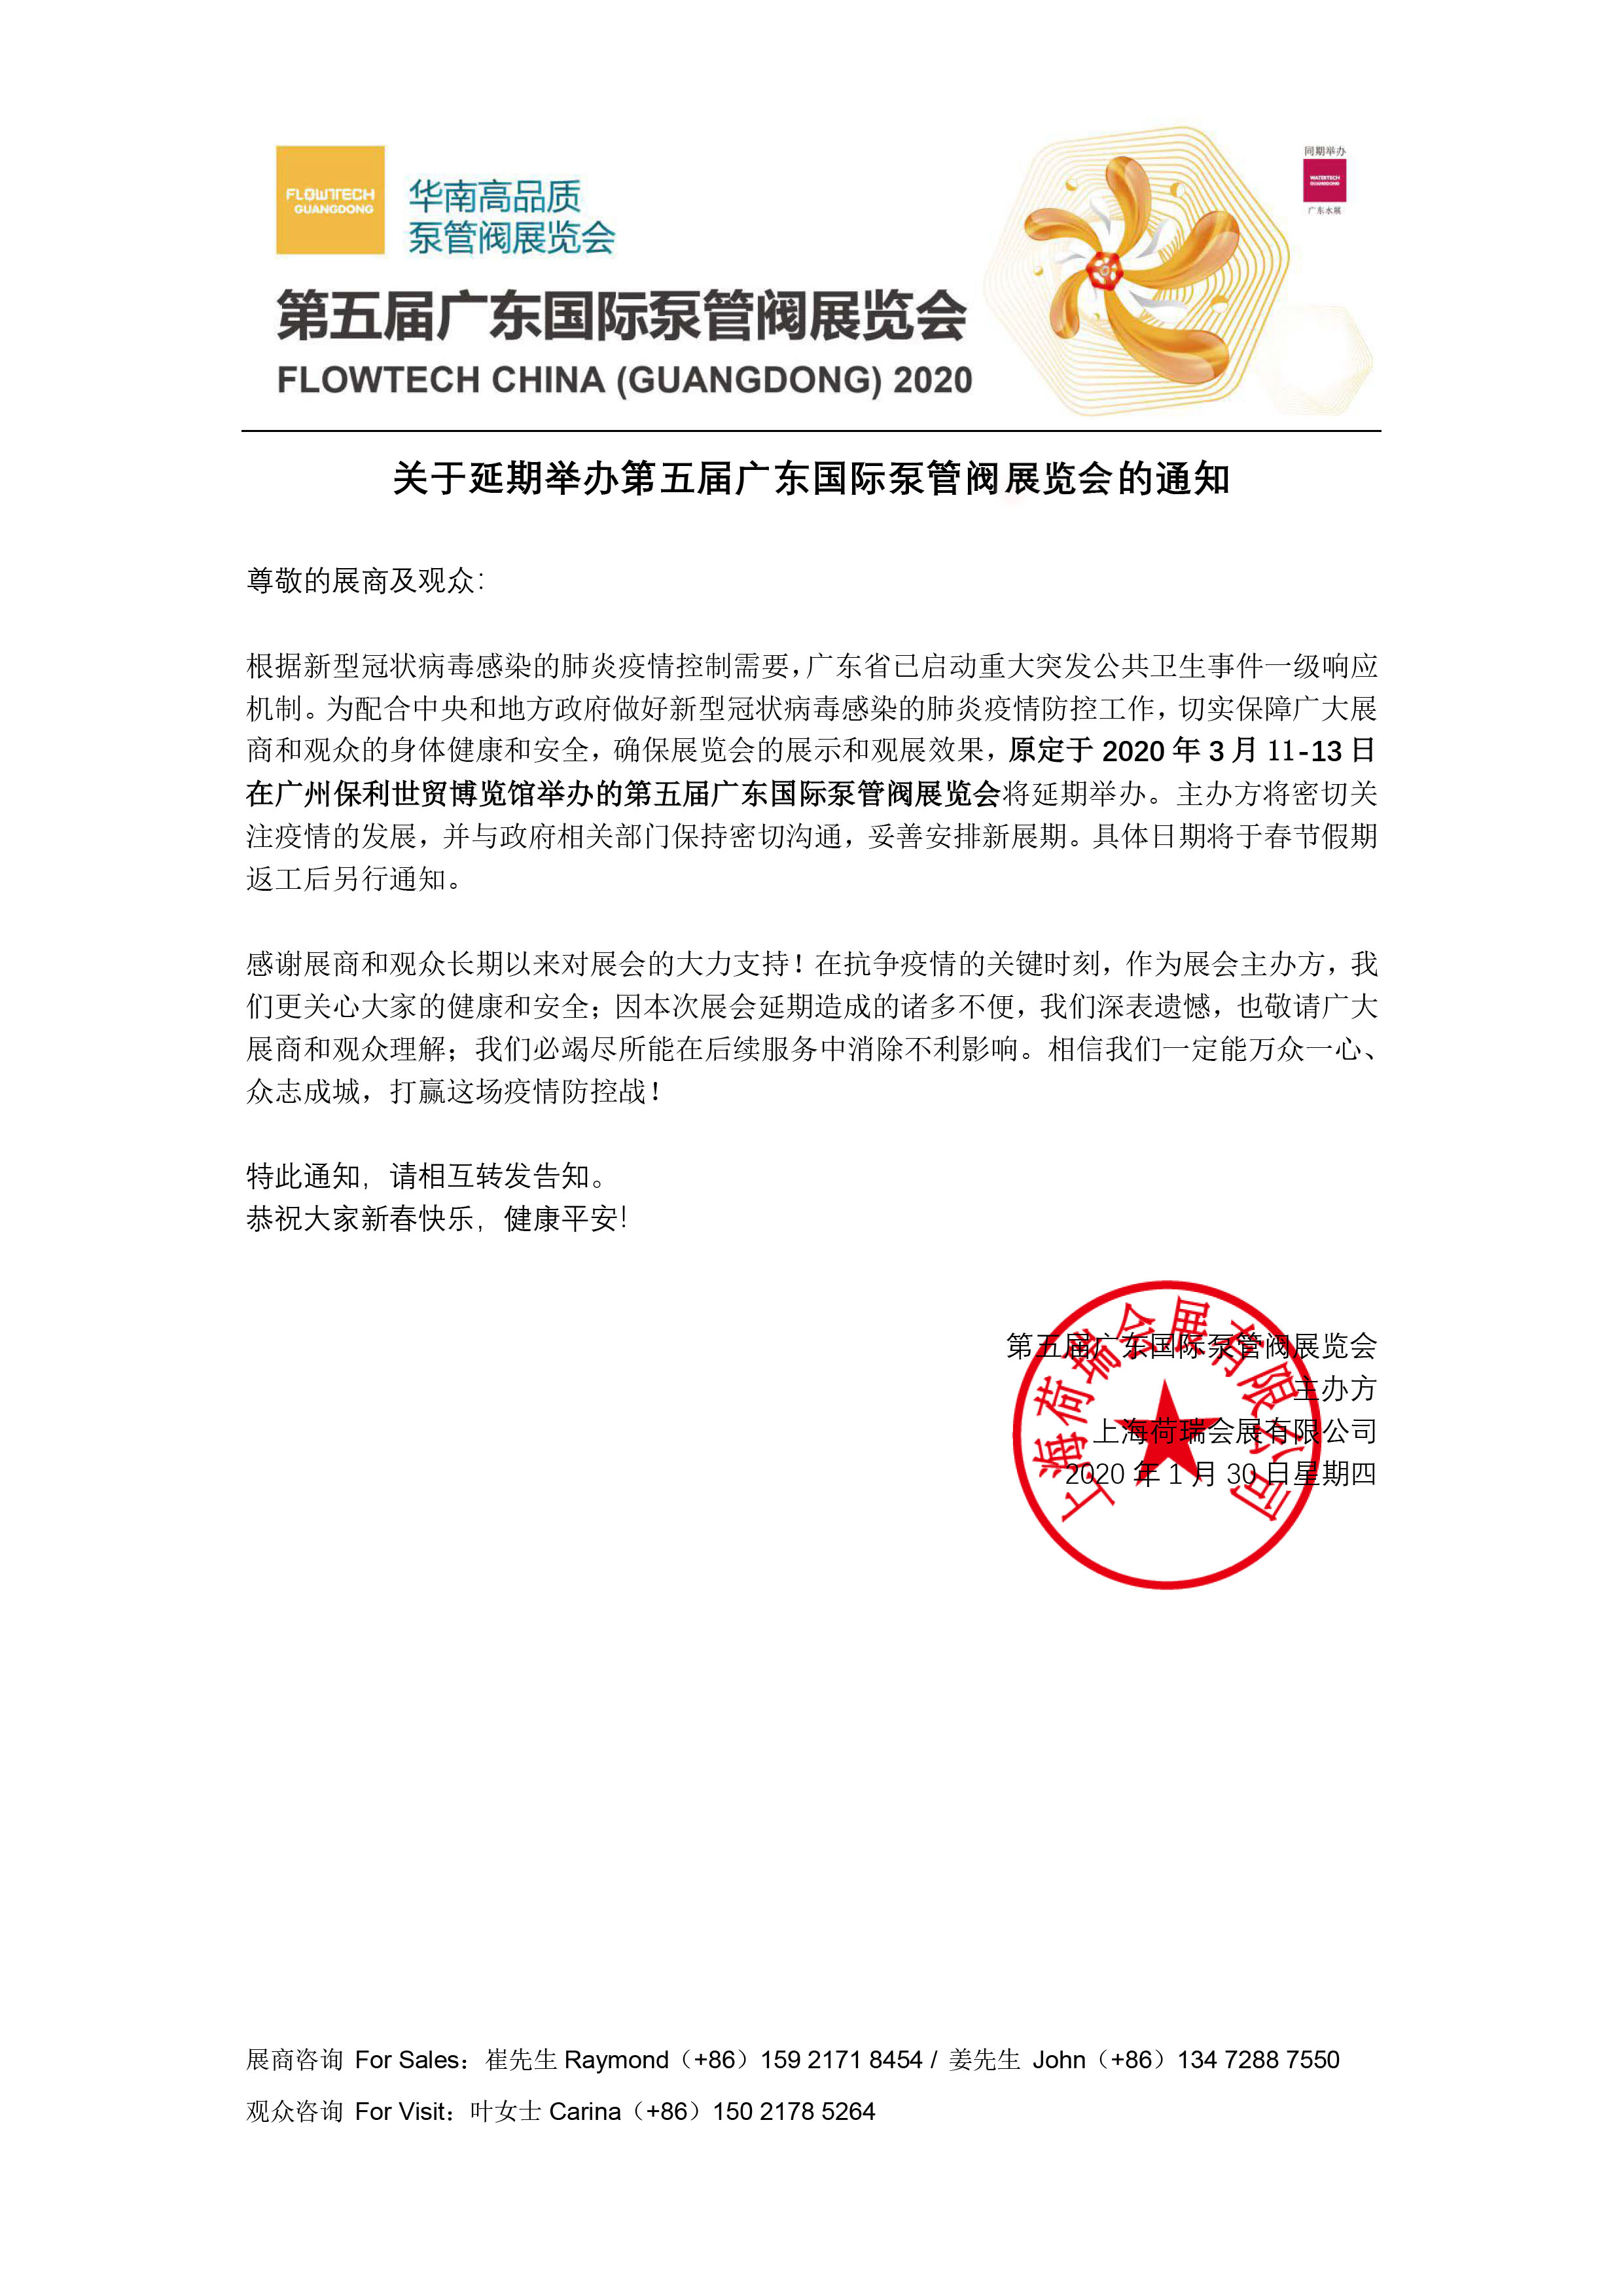 【重要通知】第五届广东国际泵管阀展览会——延期举办 展会快讯 第1张